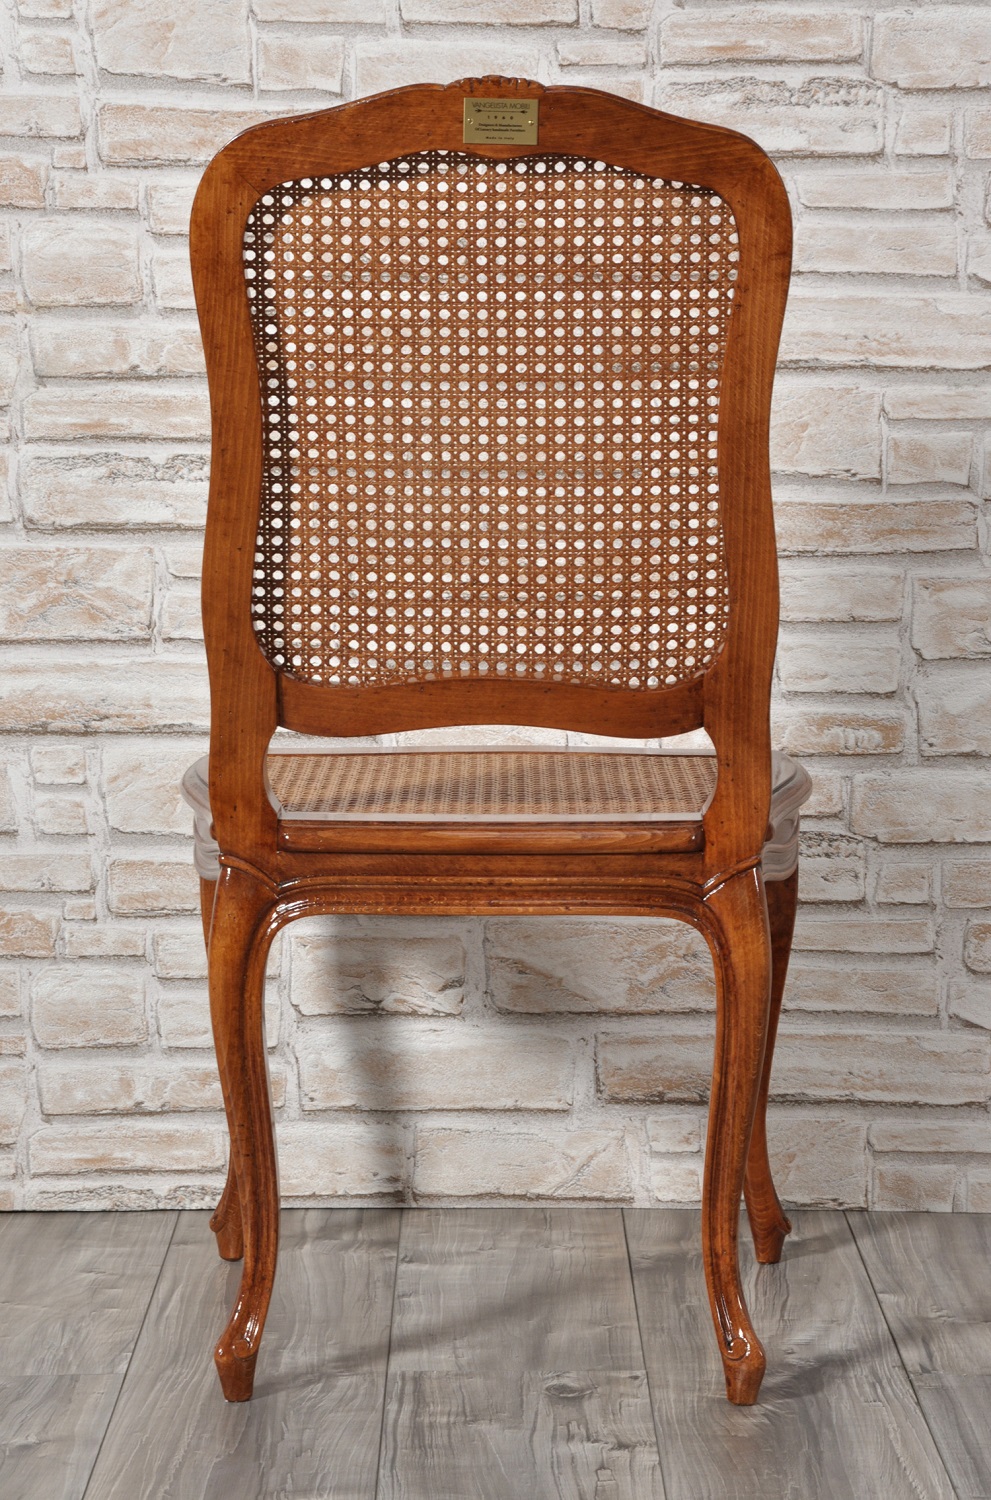 sedia per ingressi e soggiorni di lusso intagliata scolpita e sagomata a mano in stile 700 barocco veneziano realizzata a mano